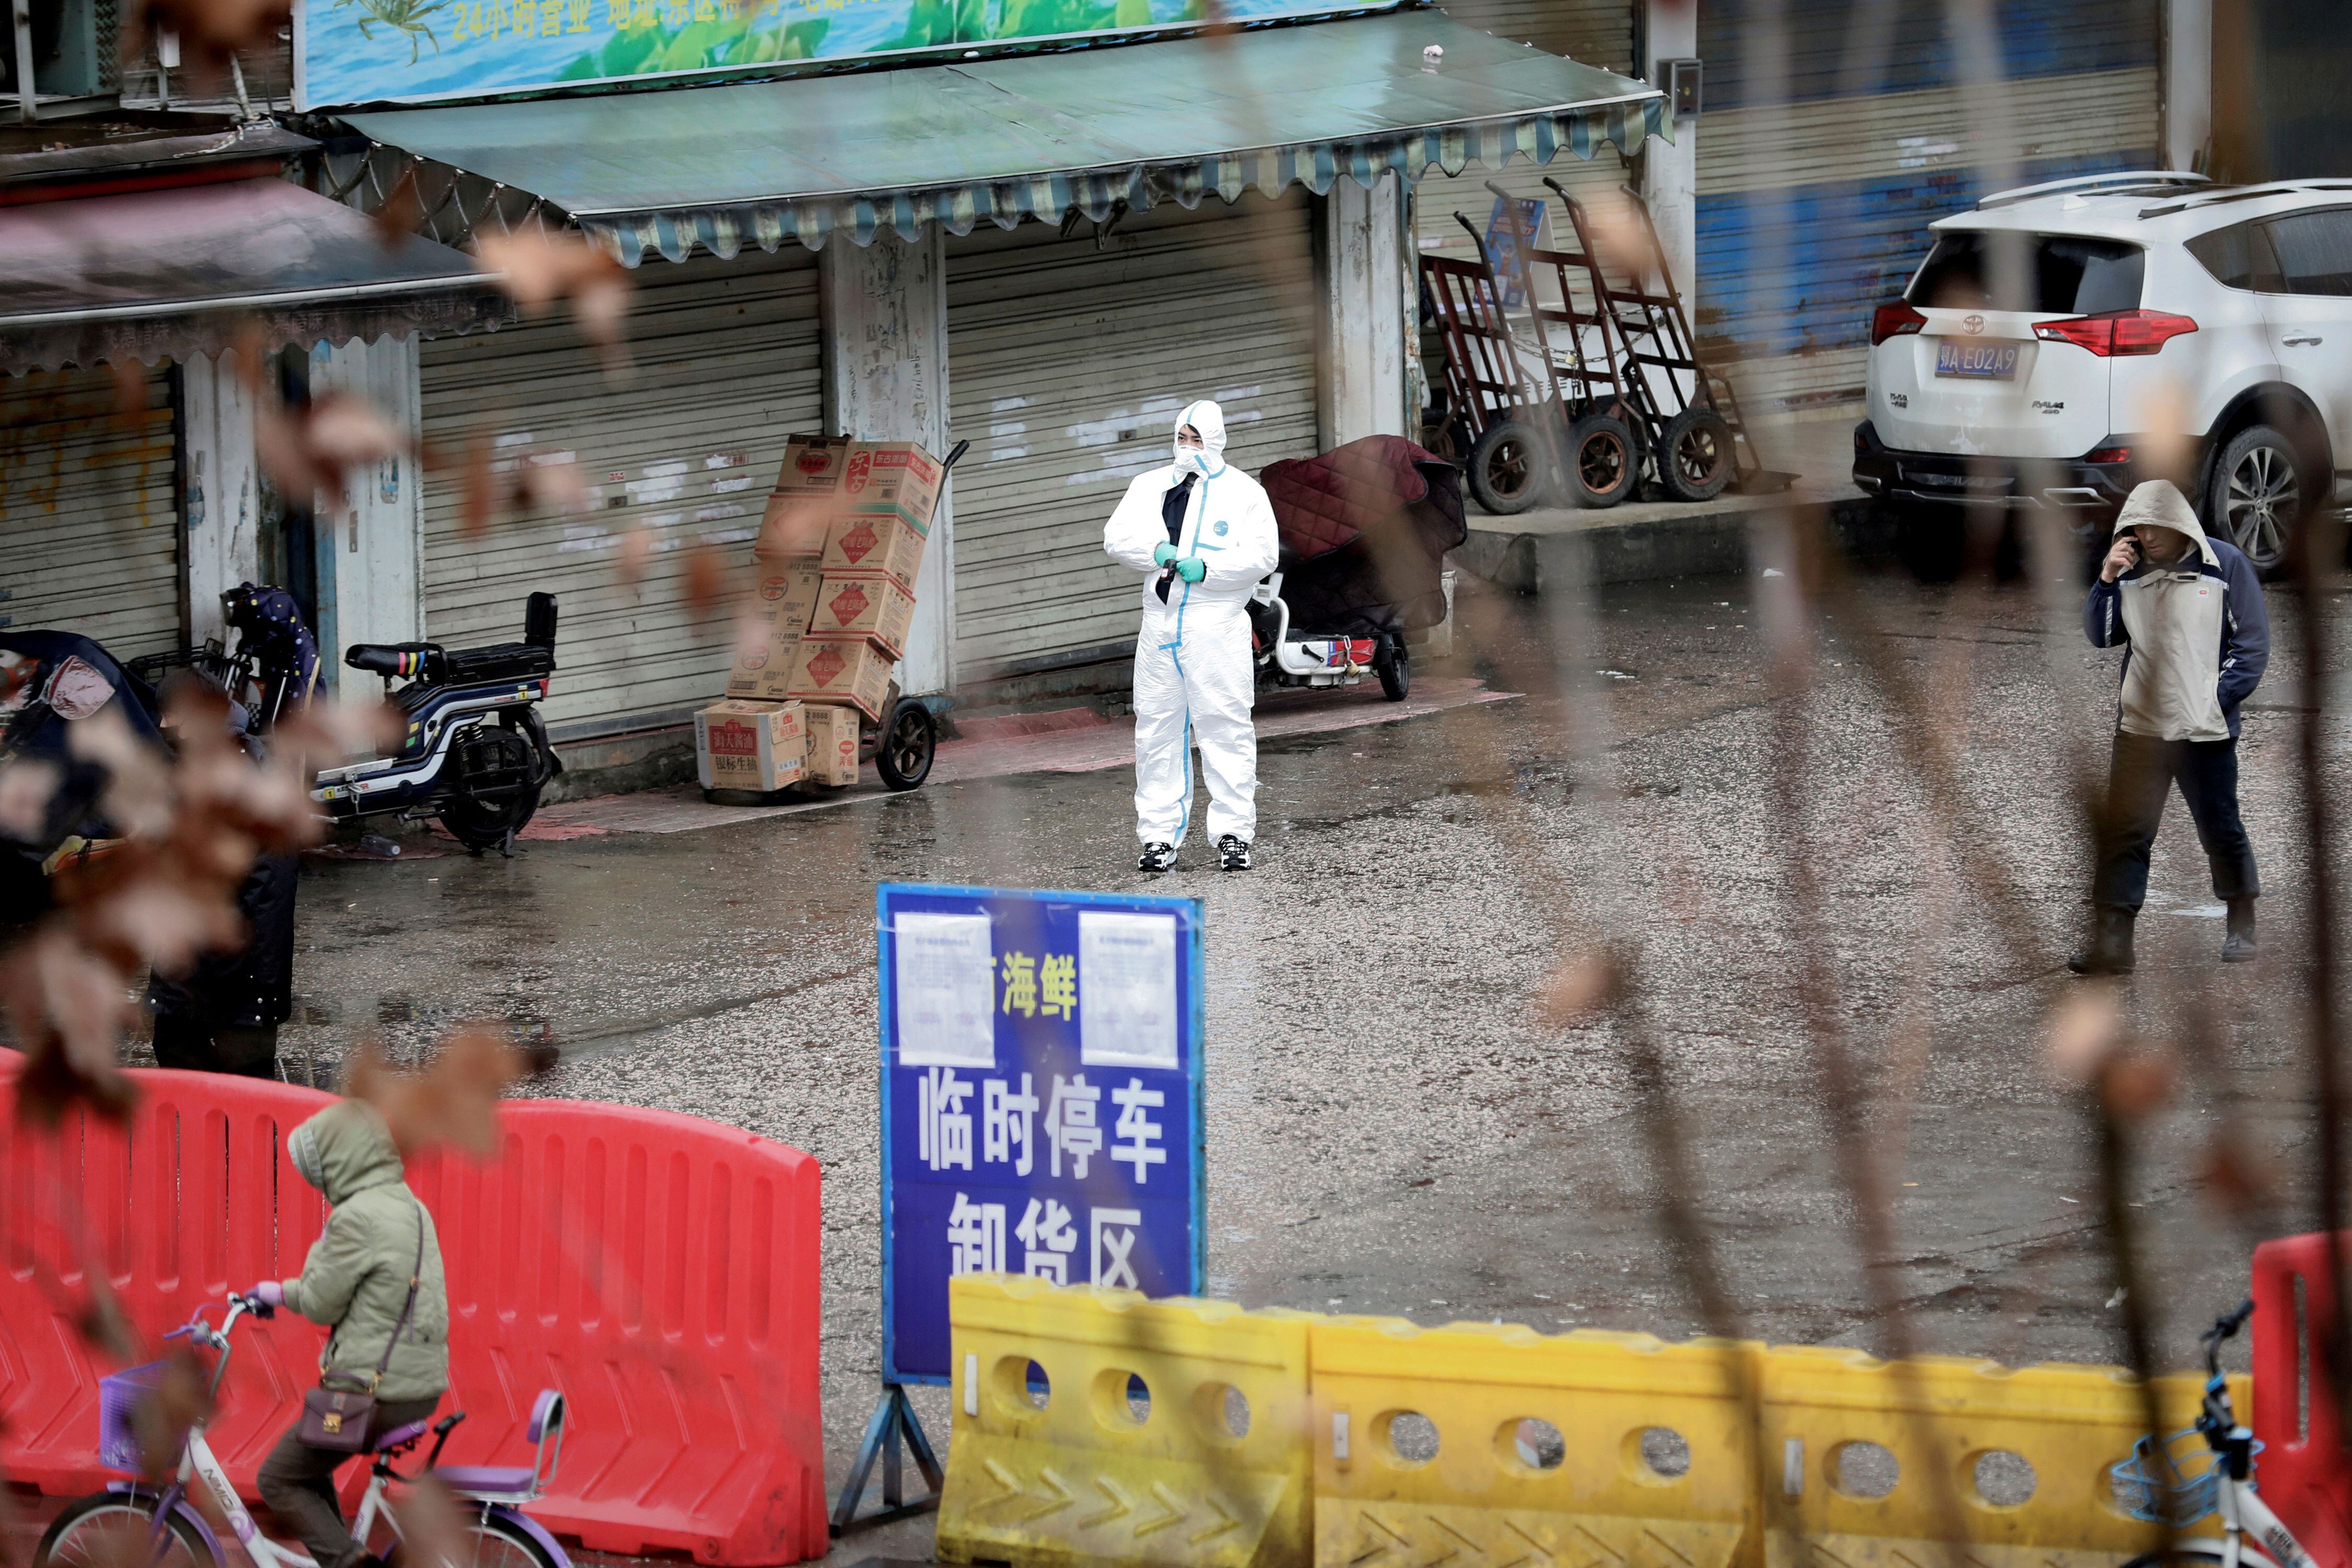 El mercado de Wuhan en China donde se comercializaban animales vivos, es considerada la “zona cero” donde surgió el COVID-19 (REUTERS/Stringer/File Photo/File Photo)